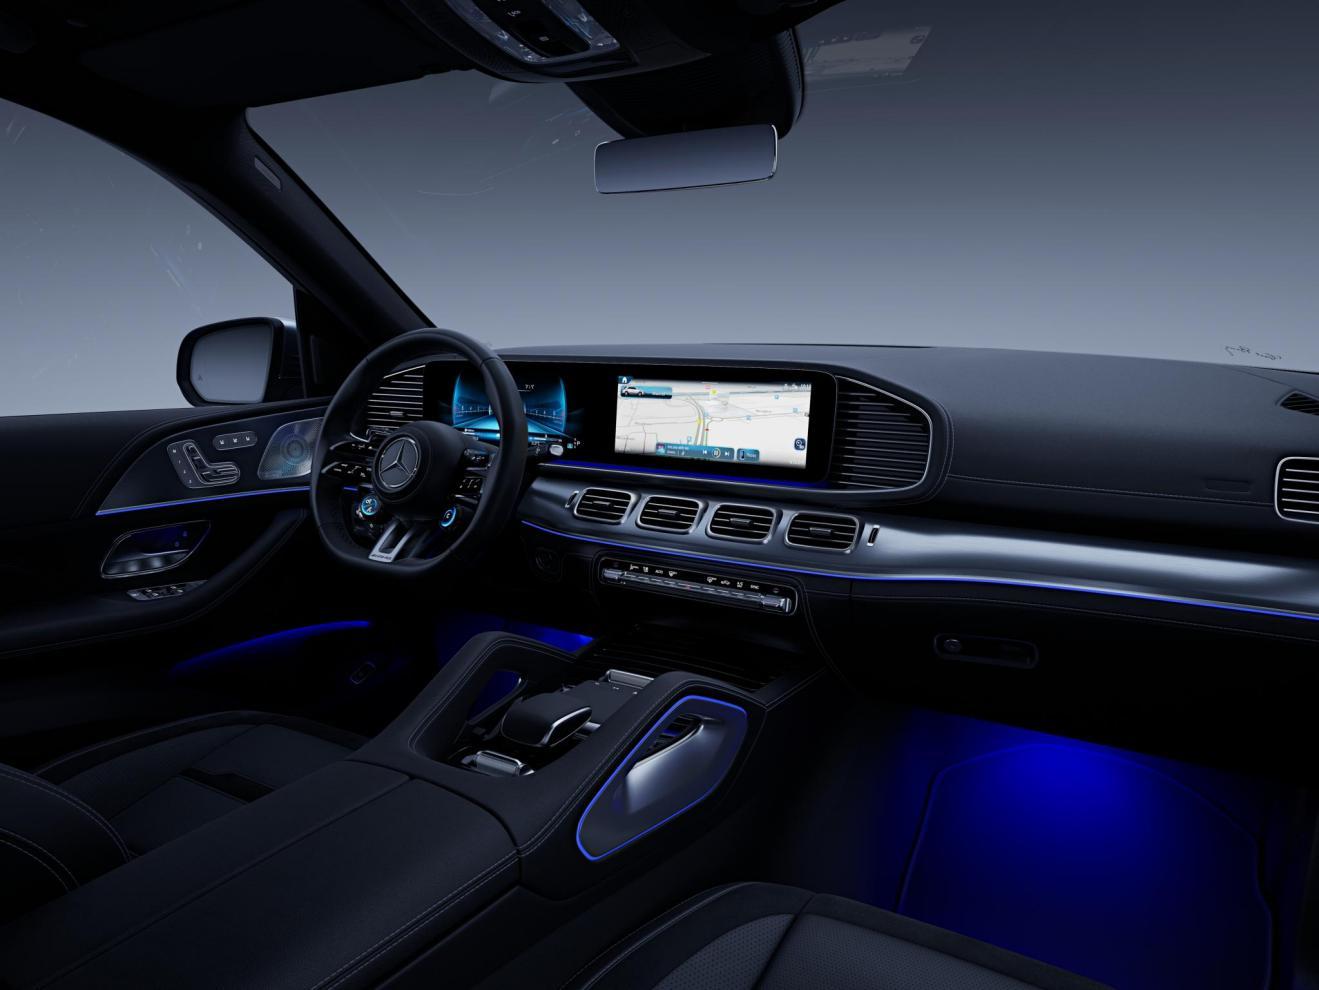 16.新一代AMG GLE SUV和轿跑SUV搭载第二代MBUX智能人机交互系统，标配高德定制导航、无线Apple CarPlay，升级“读心语音助理”，带来更加豪华智能的出行体验